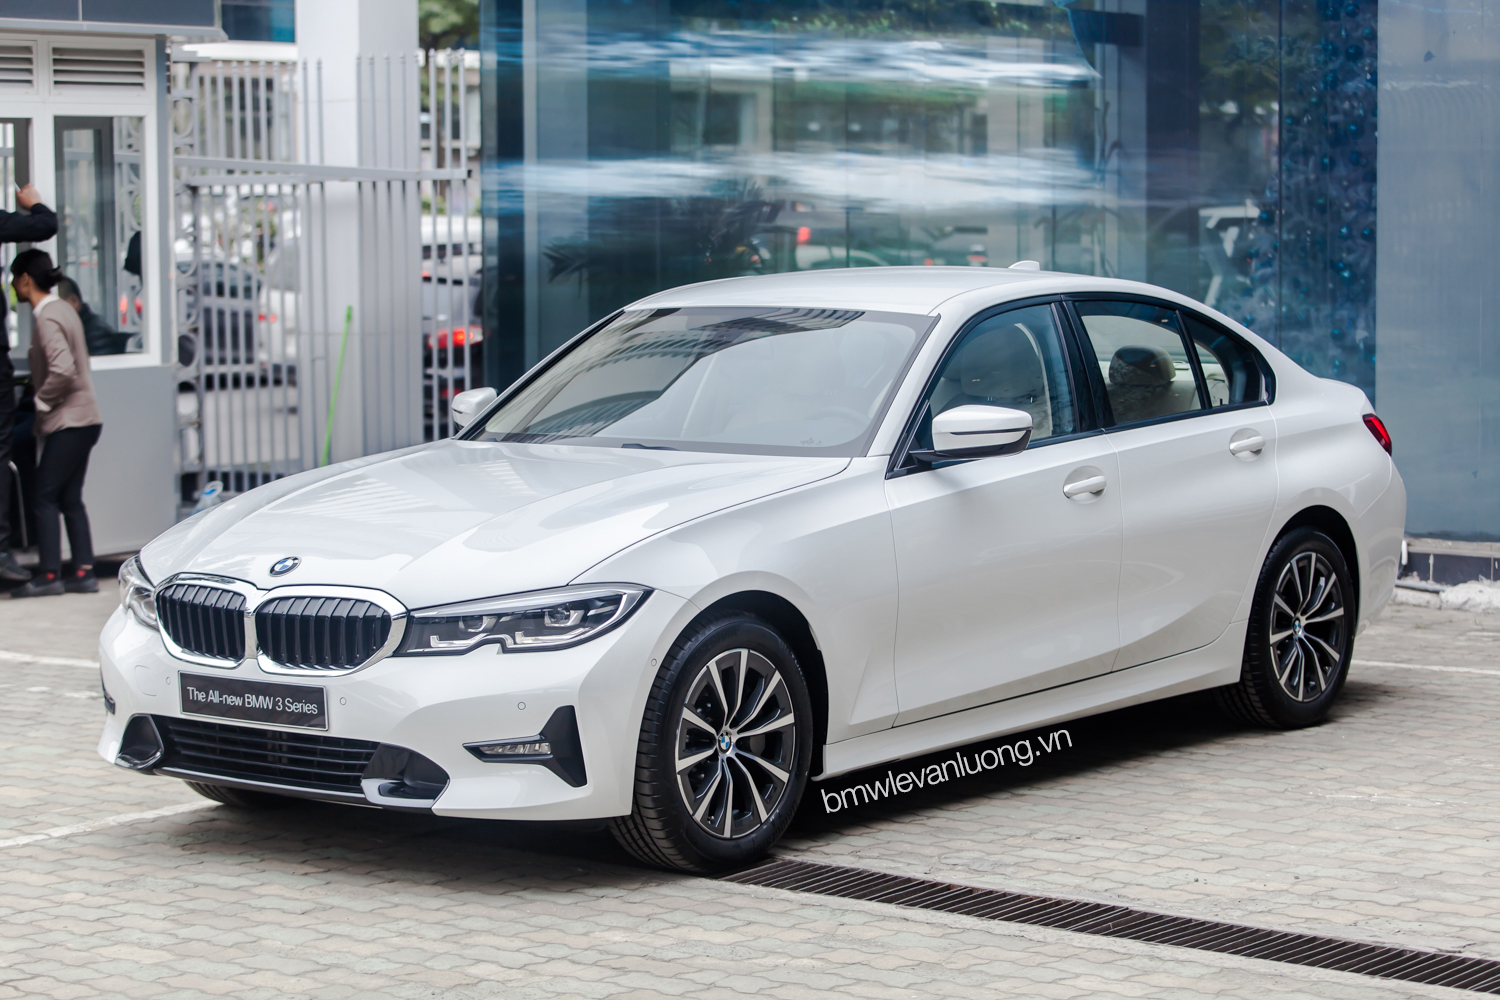 Chi tiết thông số kỹ thuật BMW 3Series bản lắp ráp Rẻ hơn gần 800 triệu  liệu có gì khác biệt  AutoFun